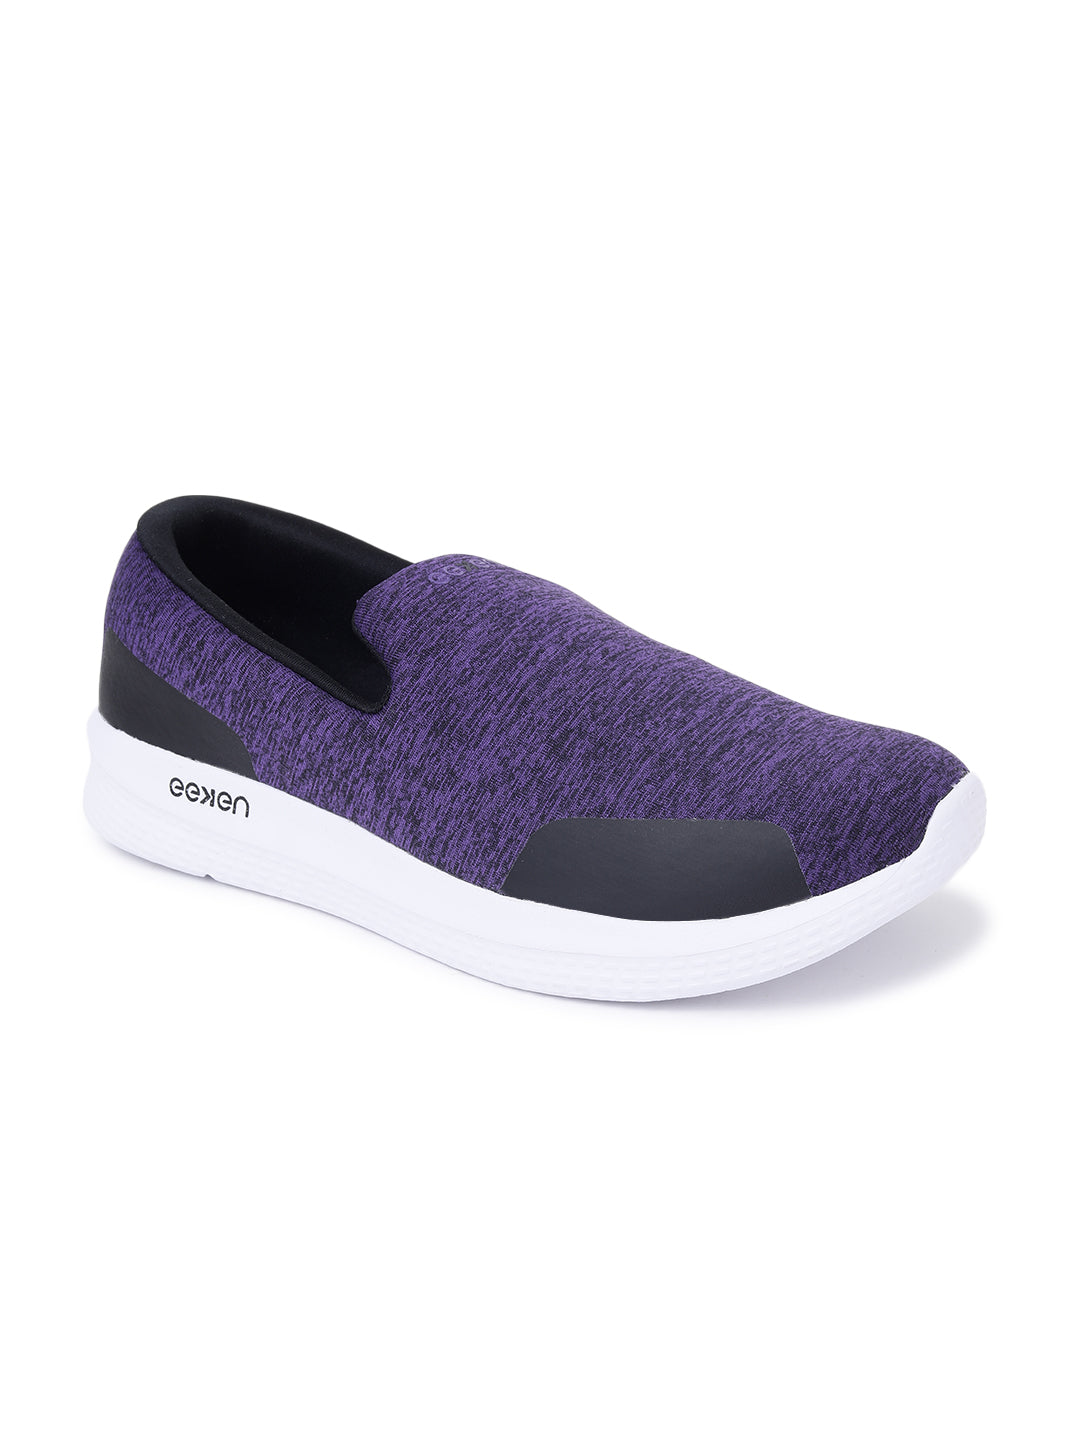 Eeken ESHL32004 Violet Lightweight Violet Casual Slip-On Shoes For Women